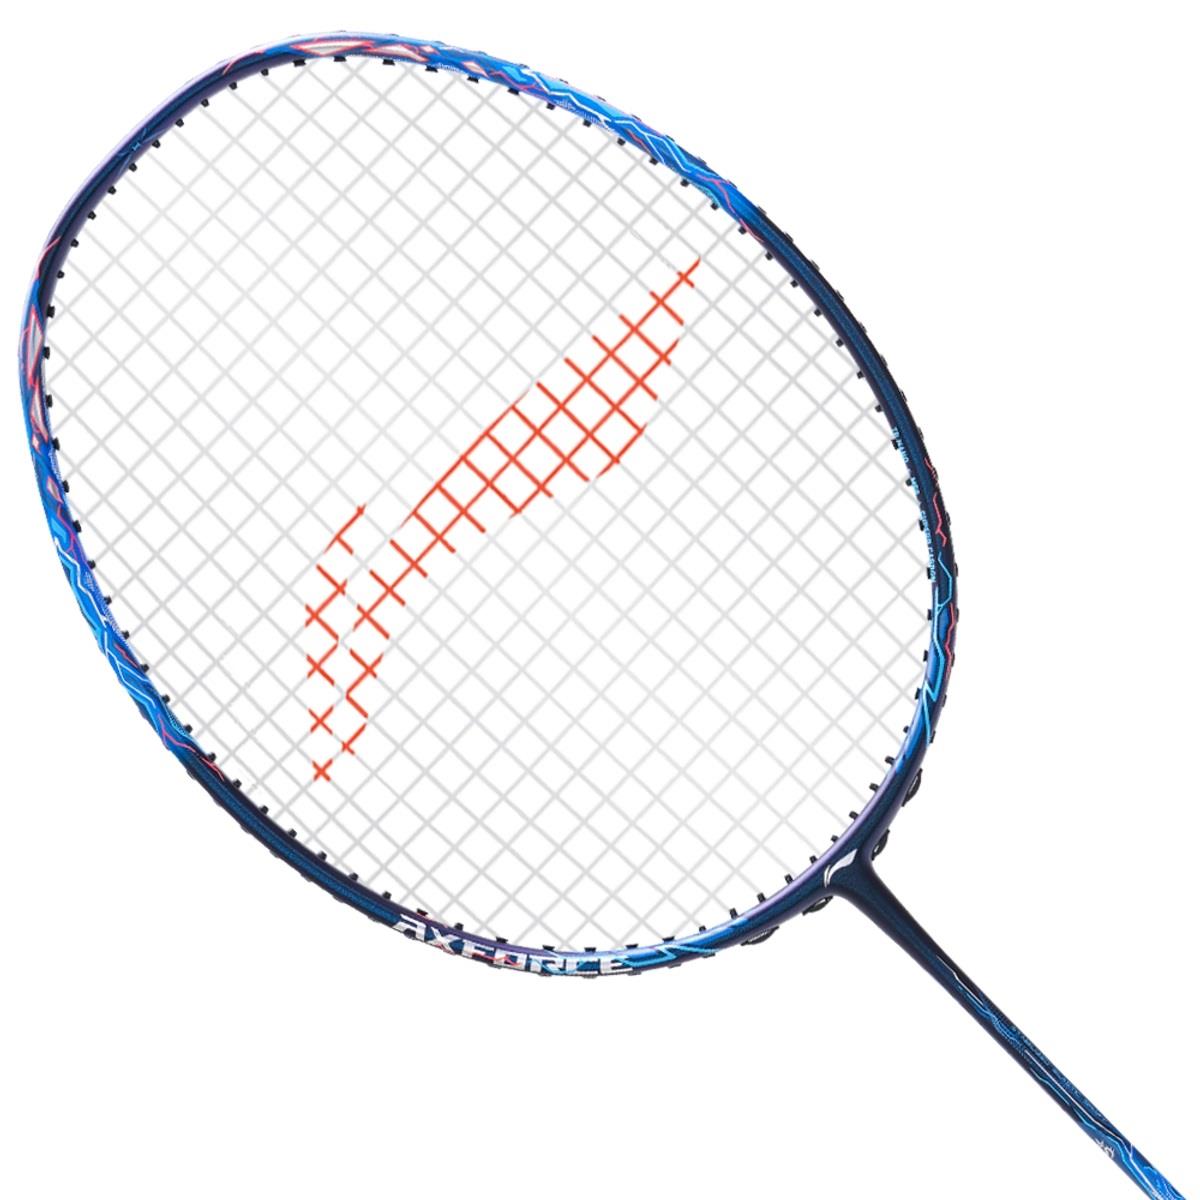 Li-Ning Axforce 90 Dragon Max 4U Badminton Racket - Blue - Throat